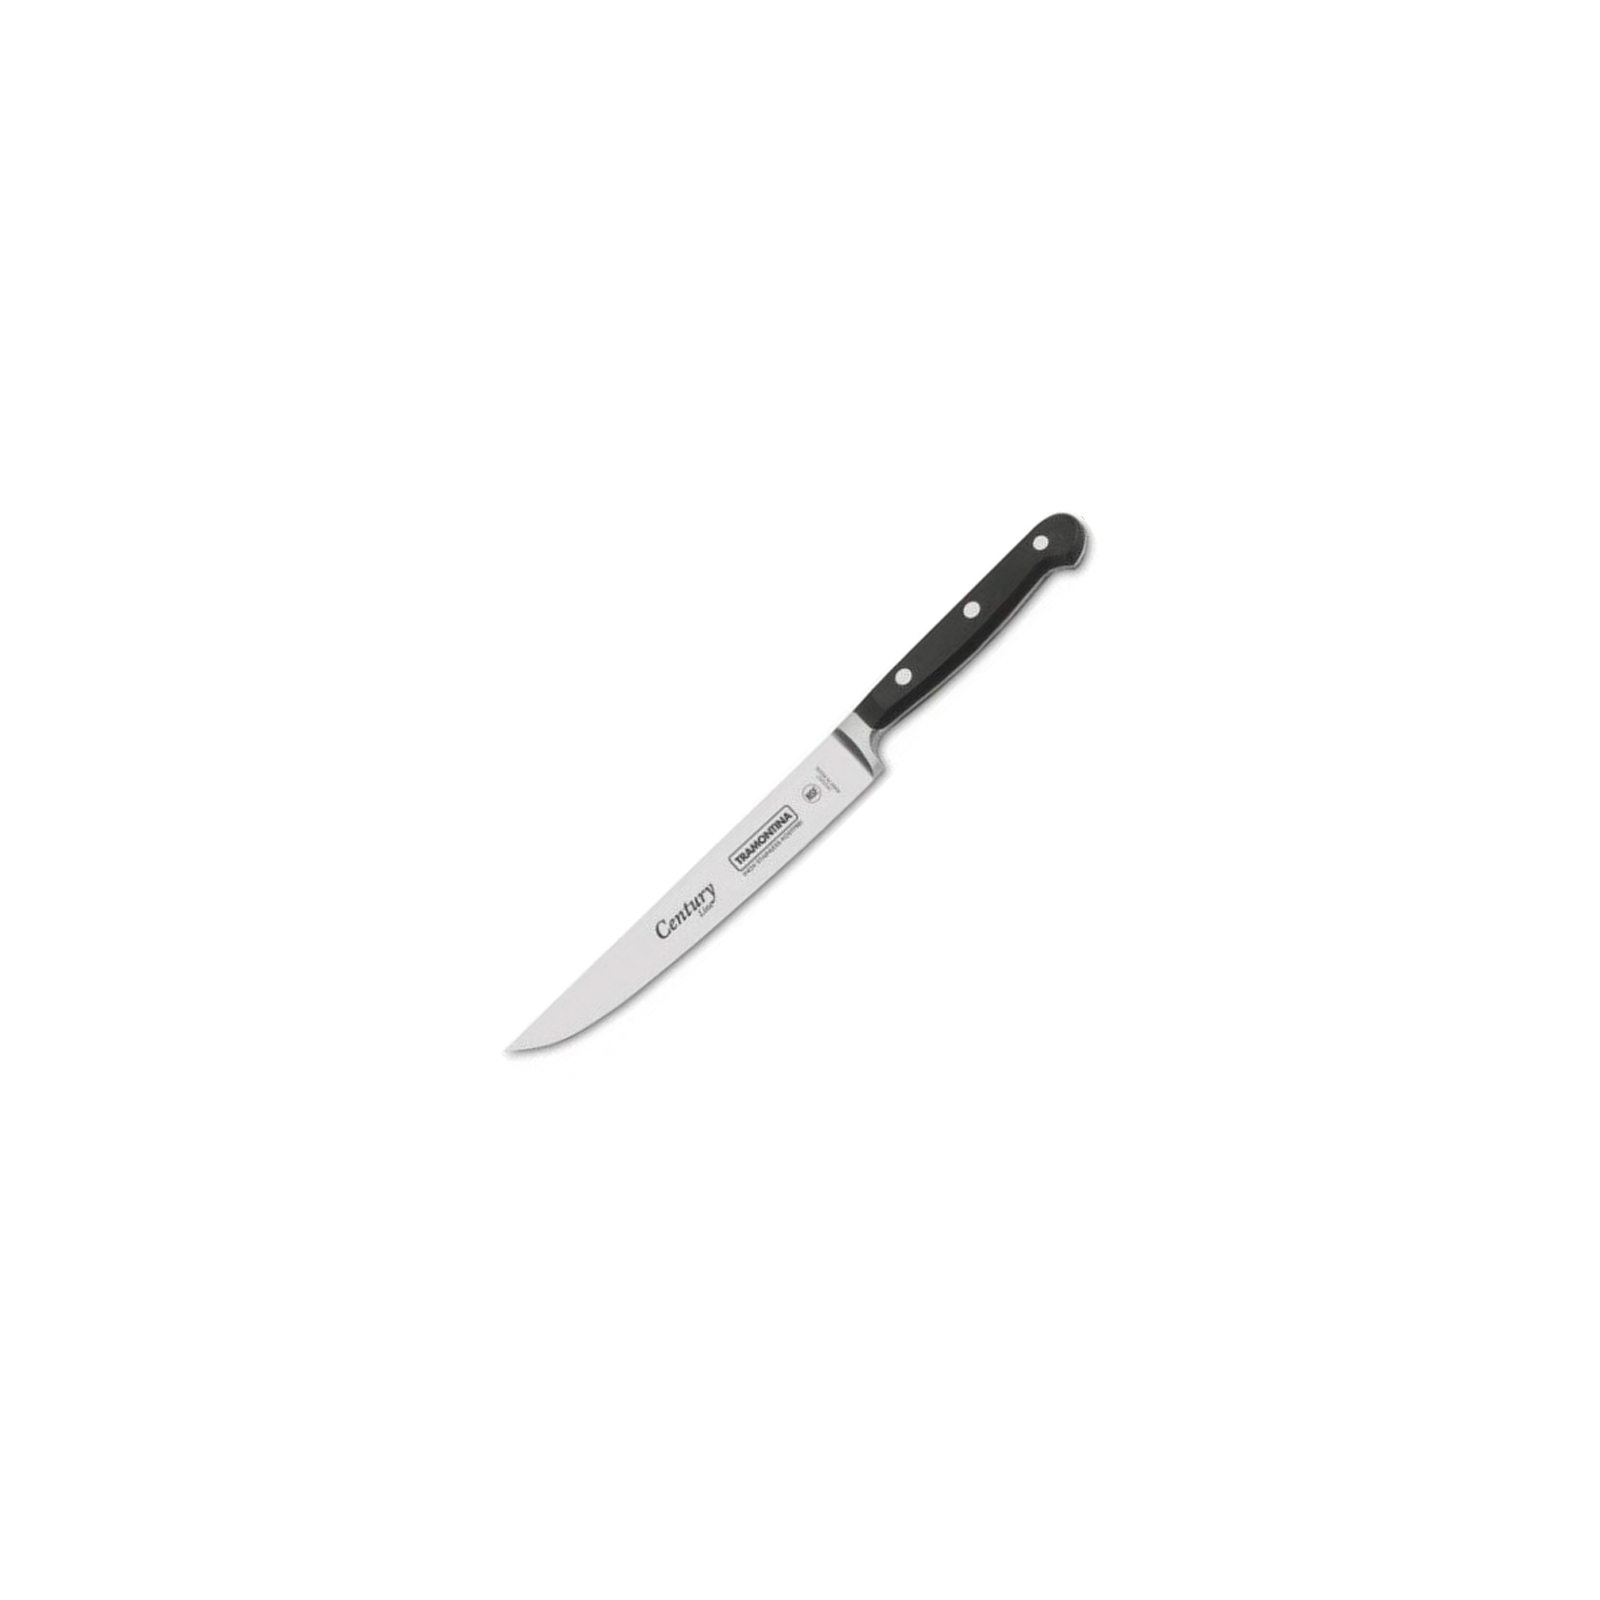 Кухонный нож Tramontina Century универсальный 177 мм Black (24025/107)